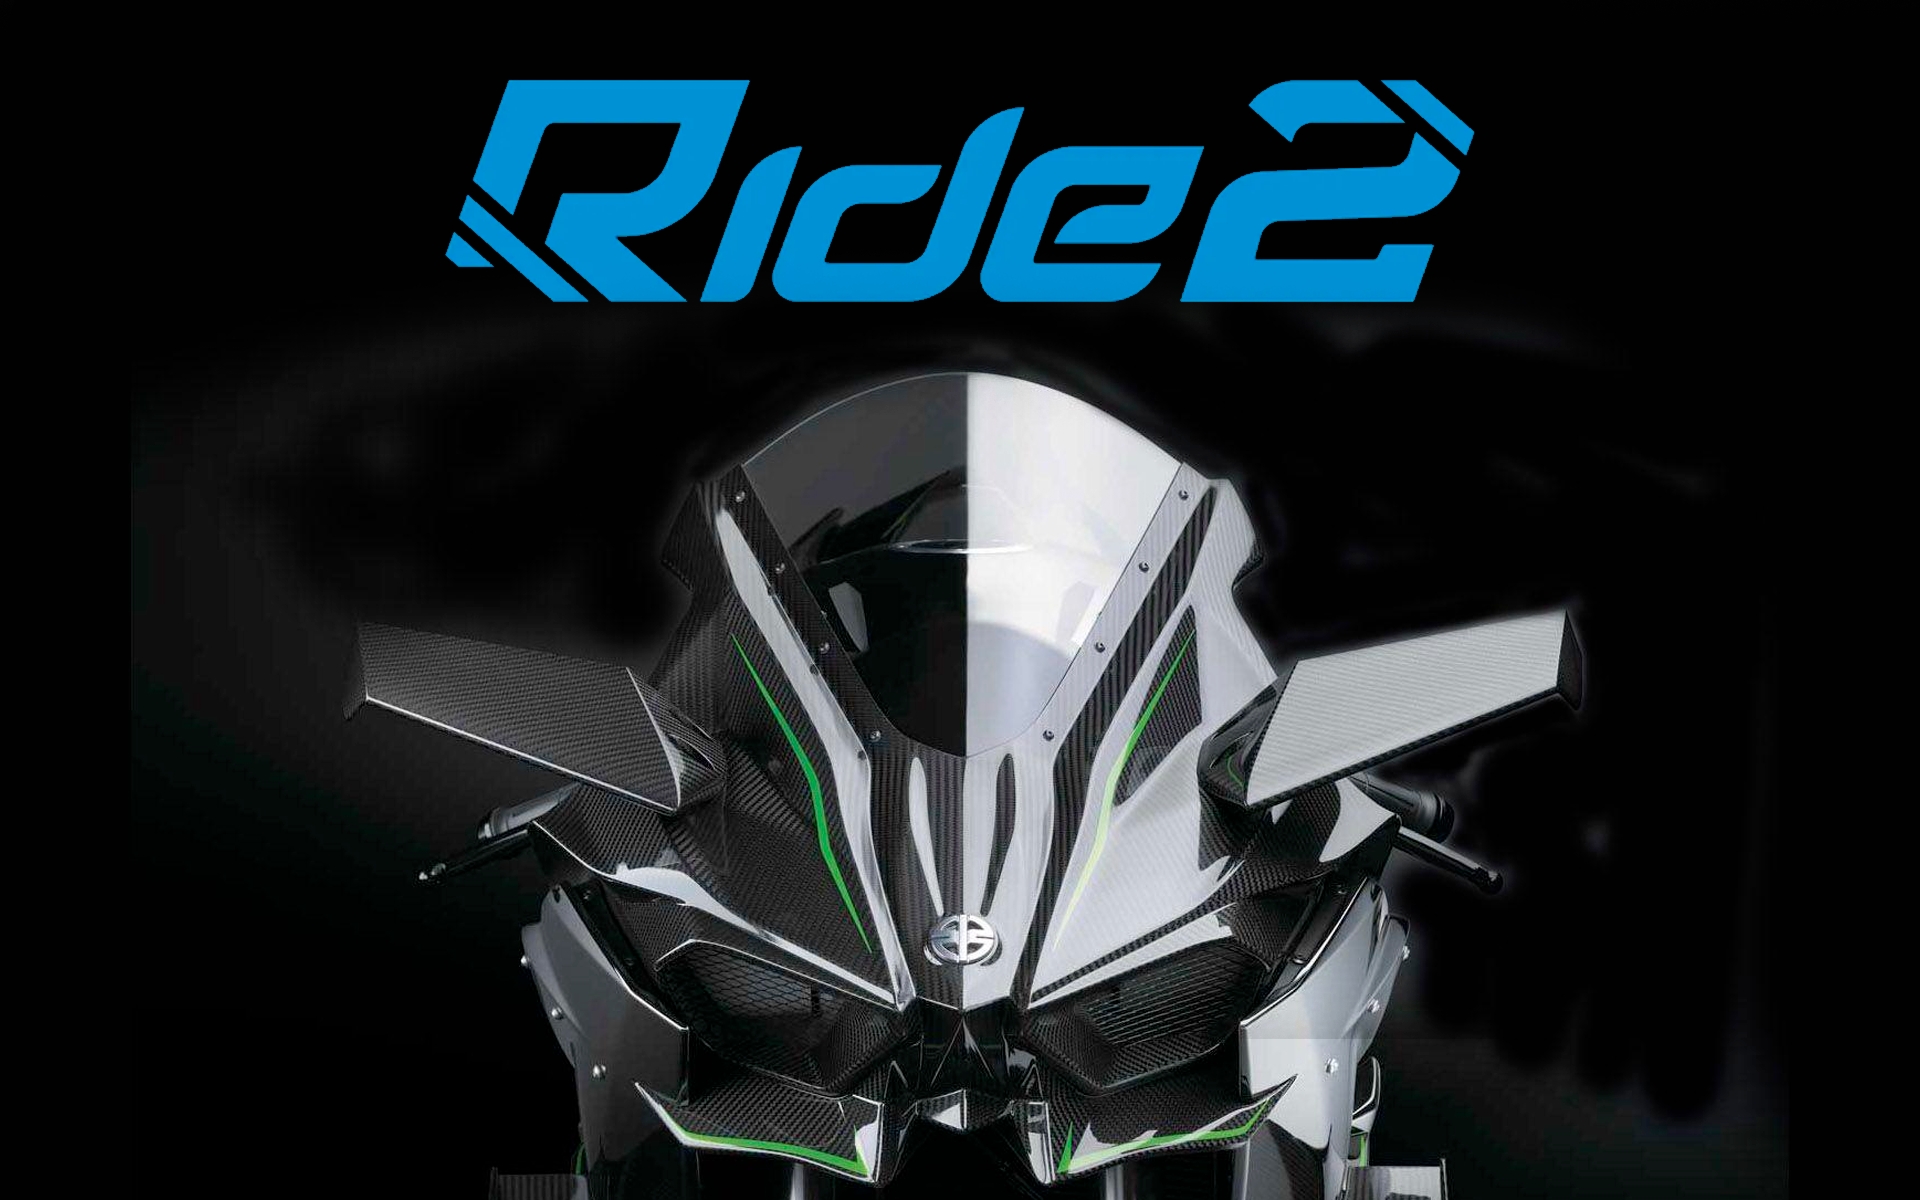 Kup Ride 2 Steam | Hình 3